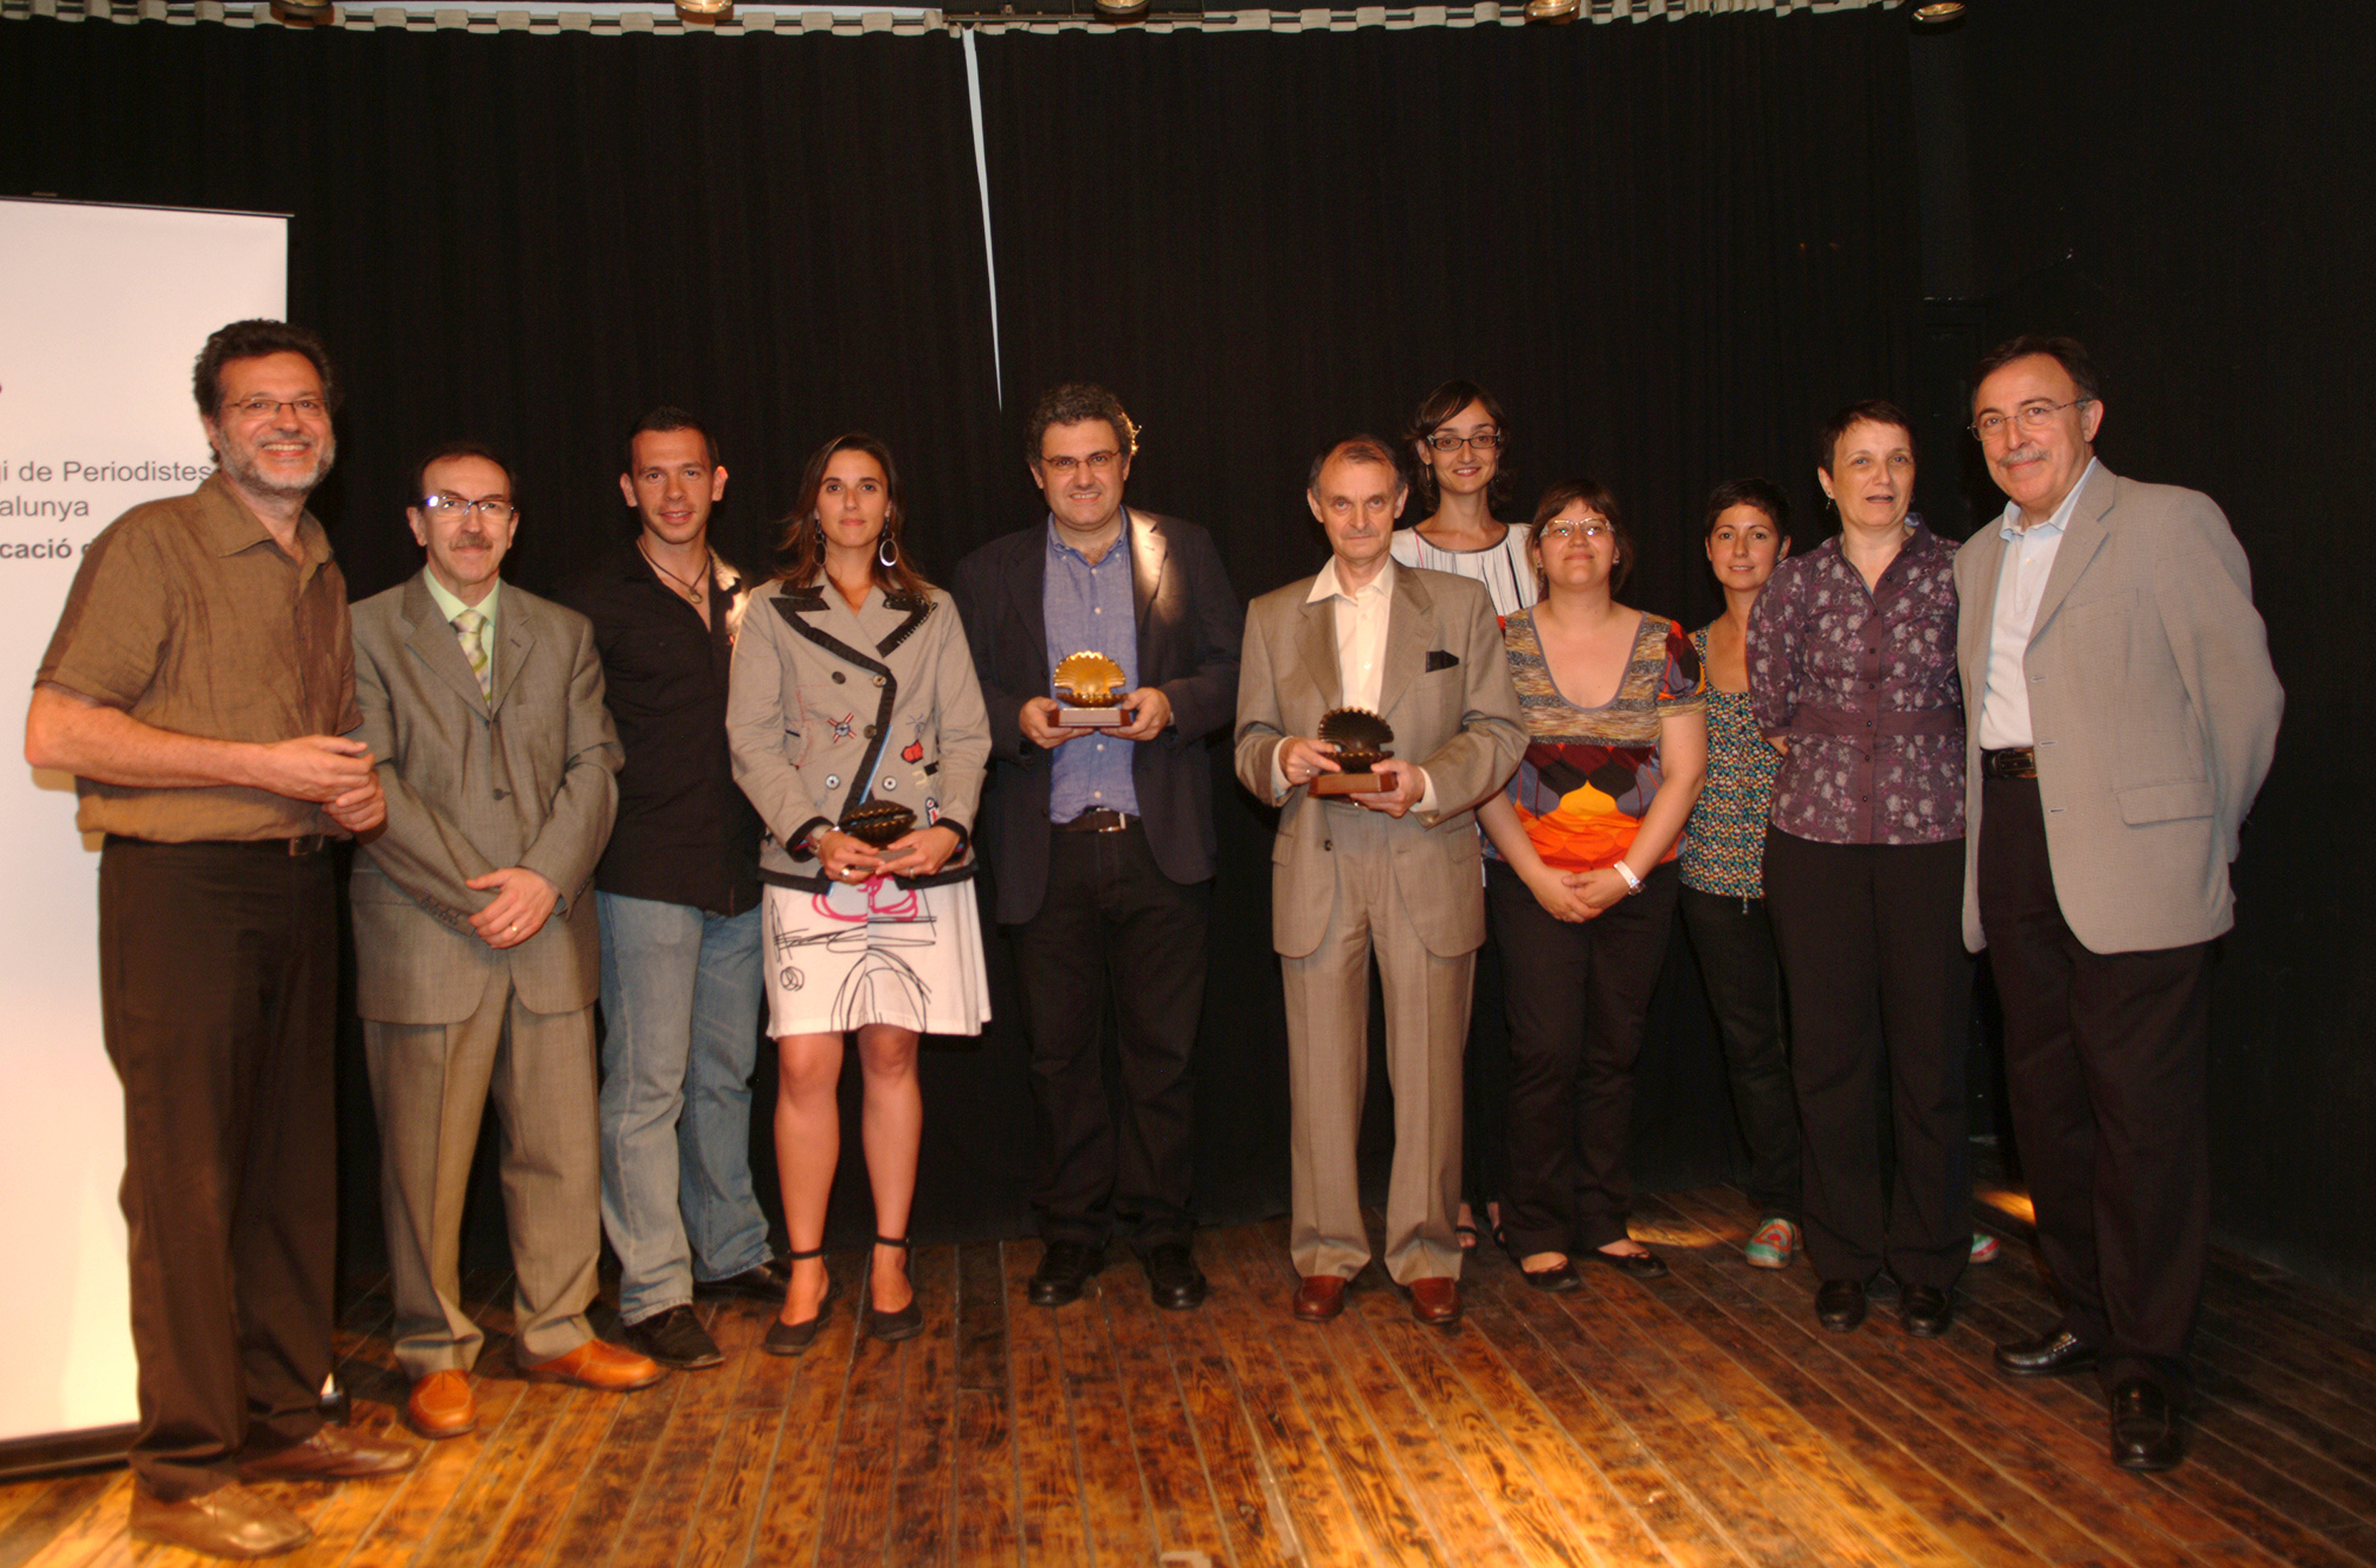 Lliurament Petxines 2009 amb el president de l'Audiència, Antonio Carril (oberta), el periodista Xavier Bas (daurada) i l'oficina de comunicació dels Mossos (tancada), acompanyats dels finalistes